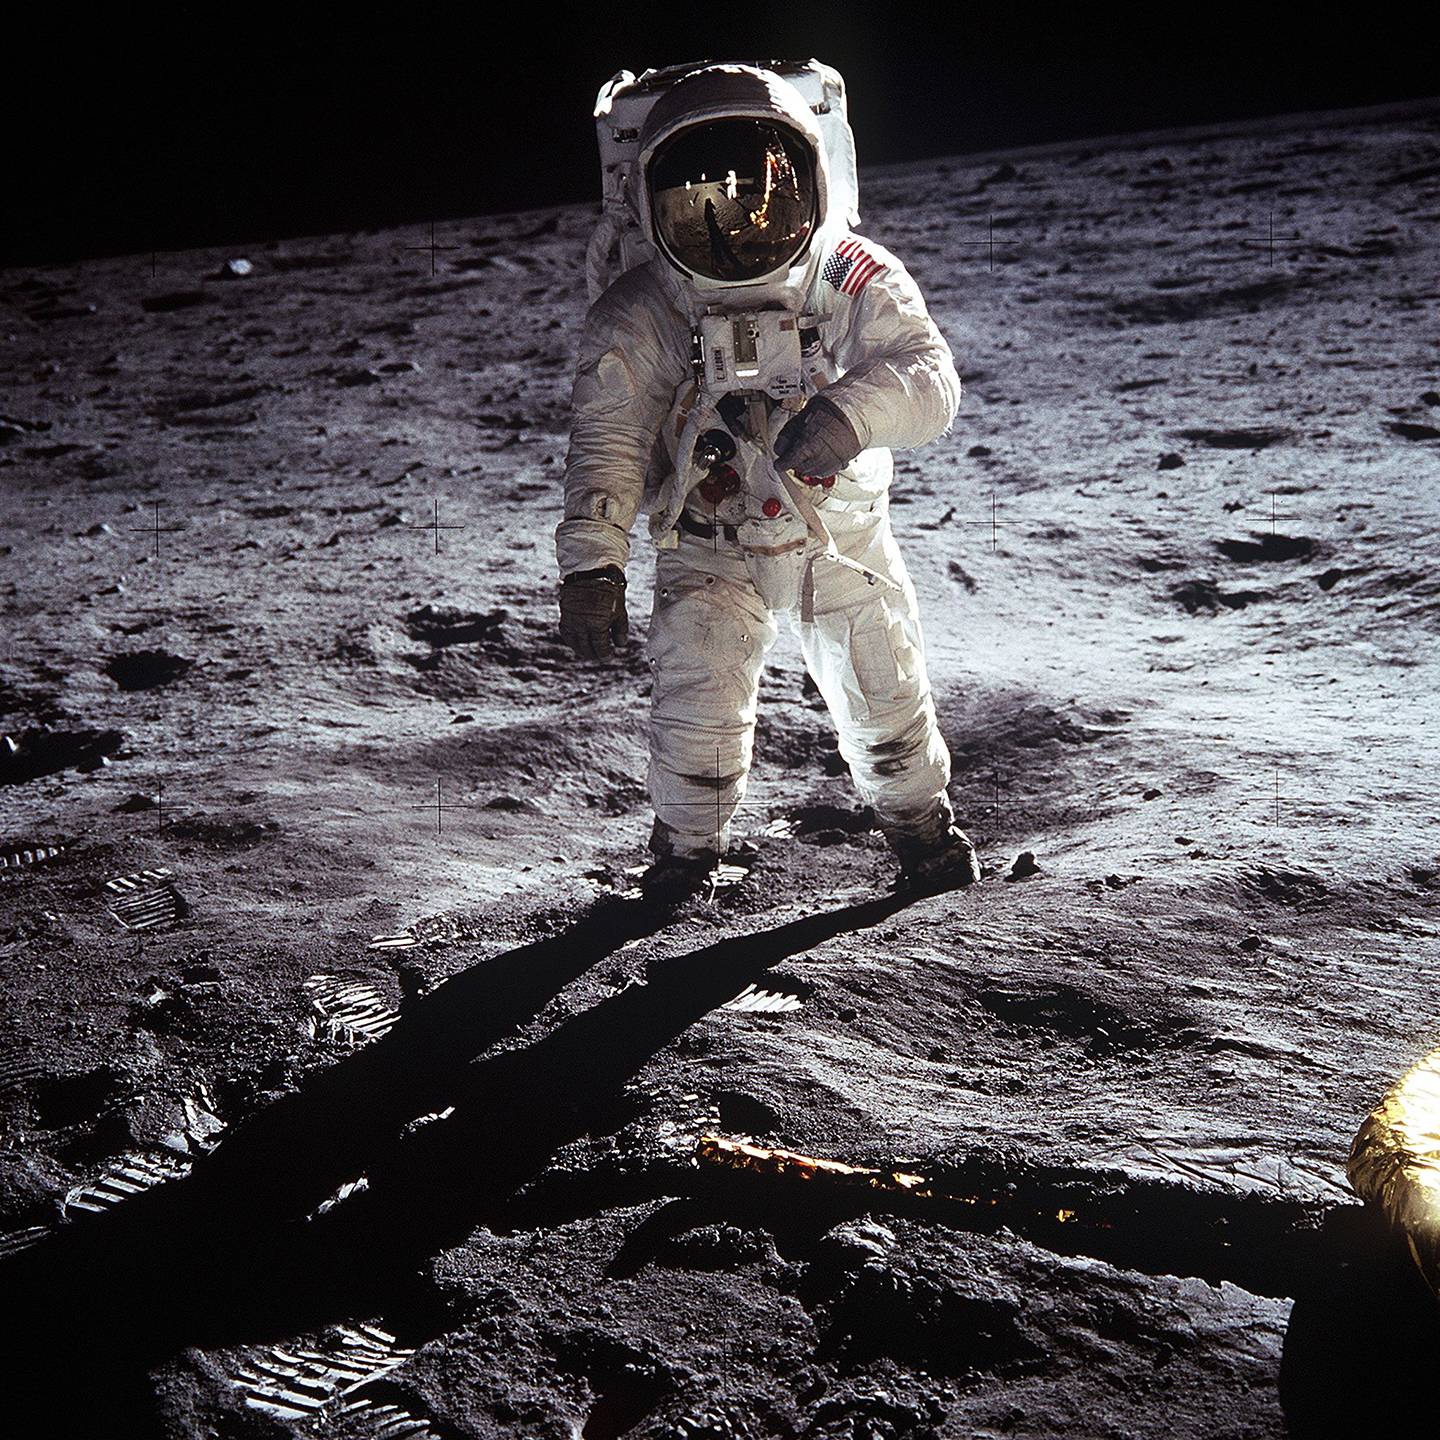 Buzz Aldrin walks on the moon in 1969